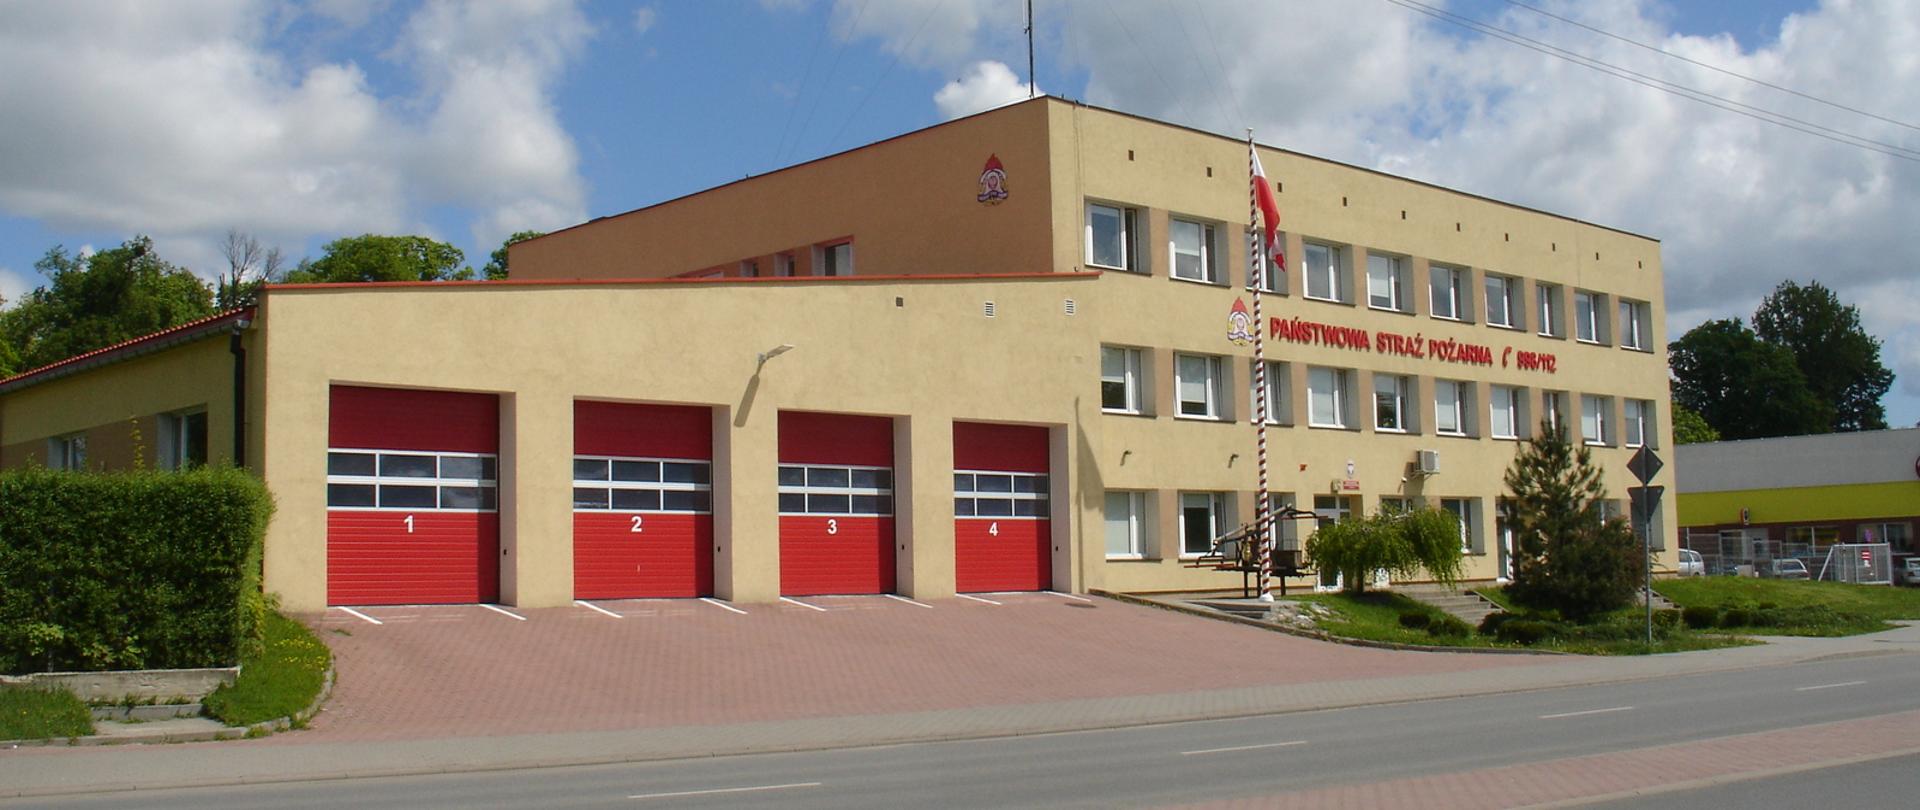 Zdjęcie przedstawia budynek KP PSP w Kętrzynie oraz garaże JRG Kętrzyn. Budynek koloru piaskowego z czerwonymi bramami wyjazdowymi ponumerowanymi od 1 do 4. Na budynku komendy czerwony napis Państwowa Straż Pożarna z logo PSP. Przed budynkiem maszt z wywieszoną biało-czerwoną flagą.